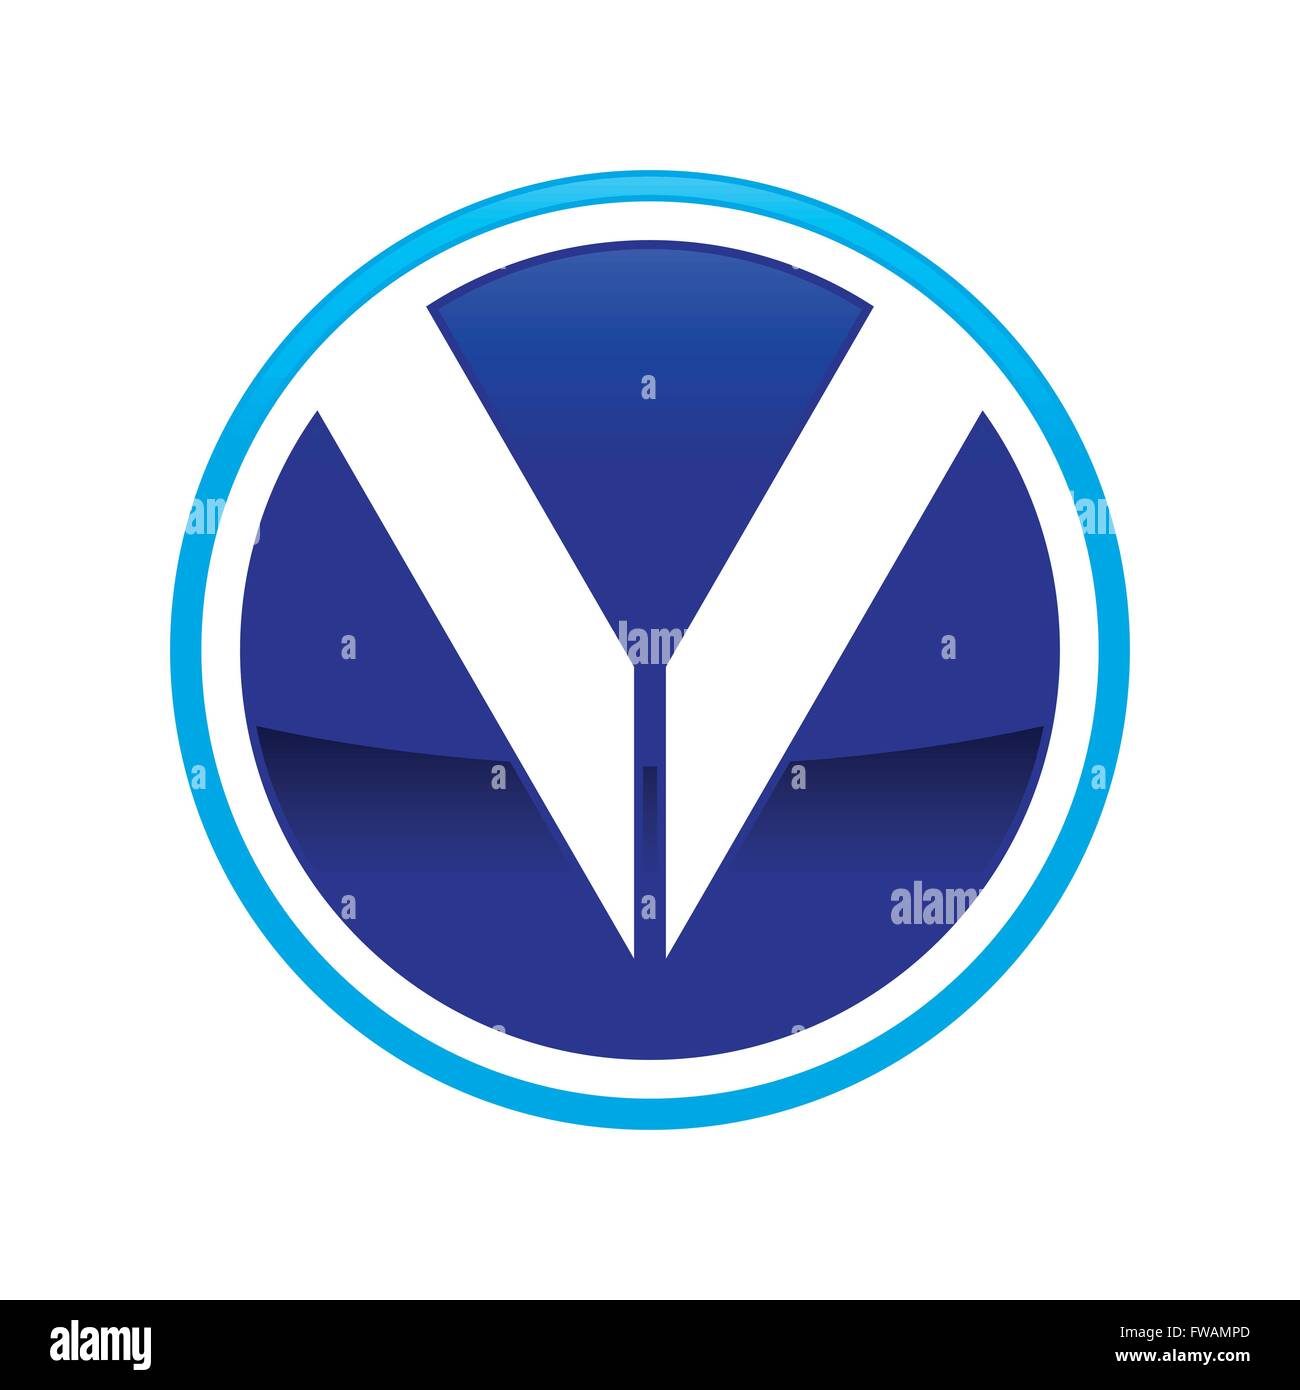 Ursprünglichen v Kreis mark Emblem Stock Vektor